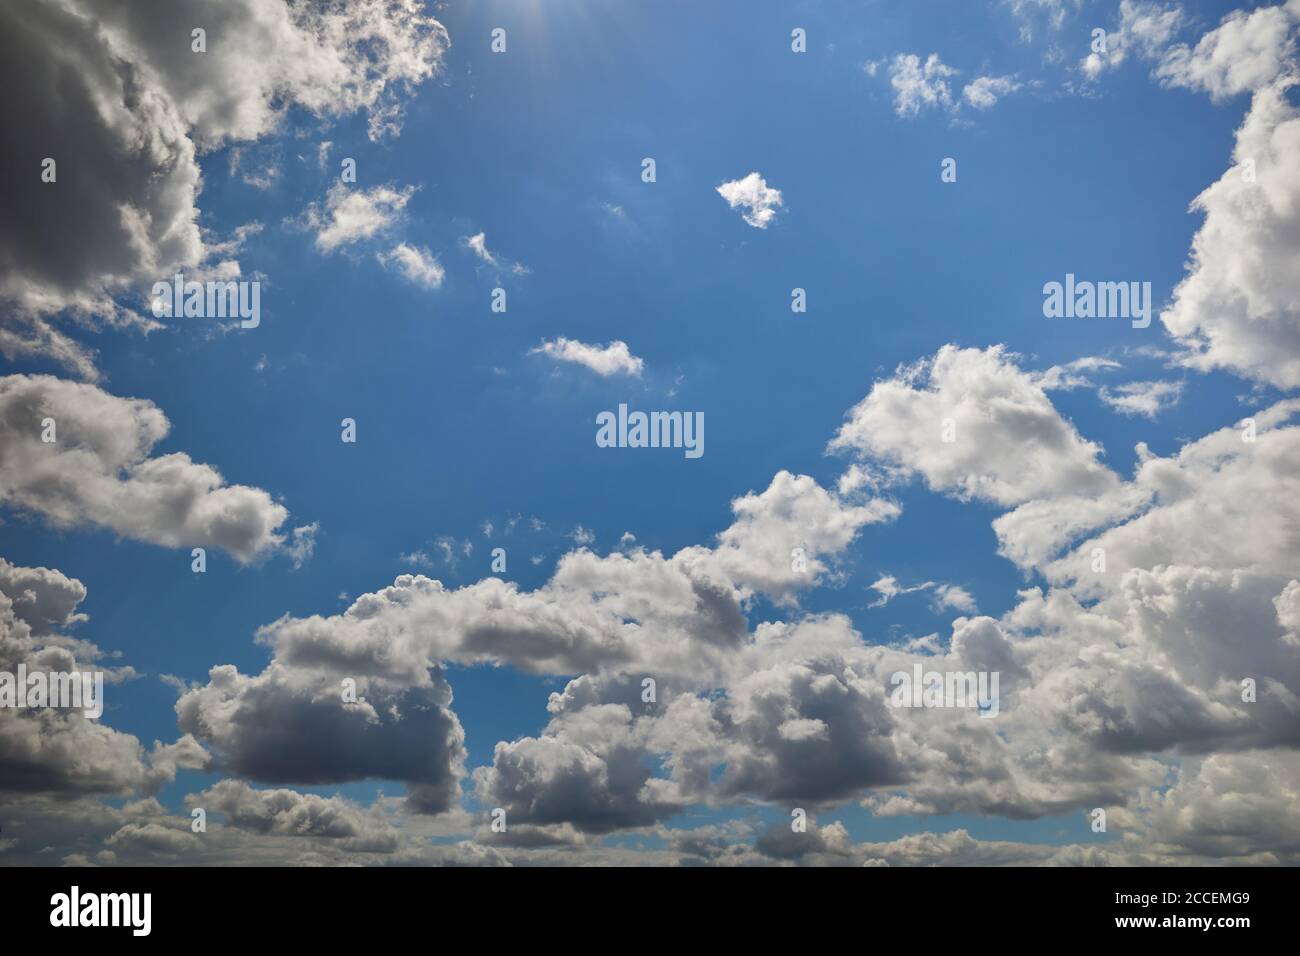 Regenwolken in blauem Himmel durch Sonnenstrahlen aufgehellt. Hintergrund für Vorhersage und Meteorologie Illustration. Cumuli Wolken schweben über dem blauen Himmel Stockfoto